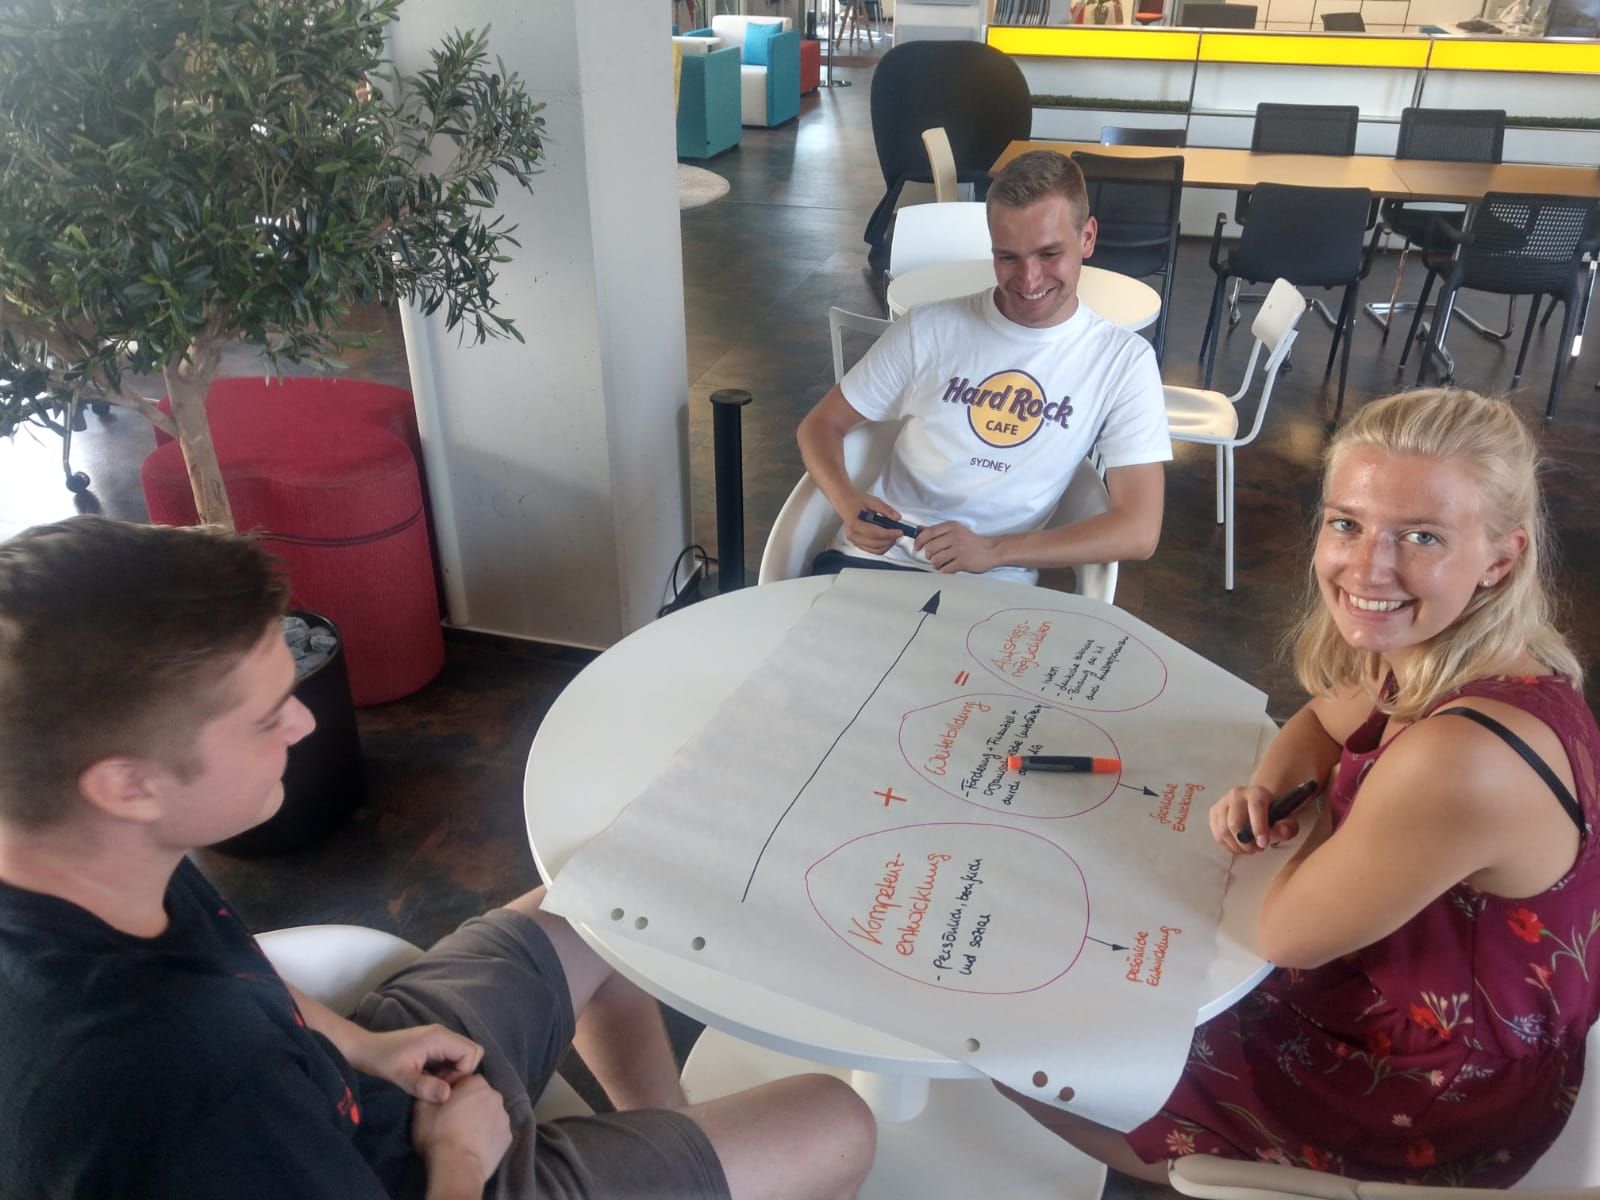 Foto: Drei Teilnehmer des Sharpen Programmes sitzen an einem Tisch und zeichnen auf einem Clipboardpapier eine grafische Darstellung.